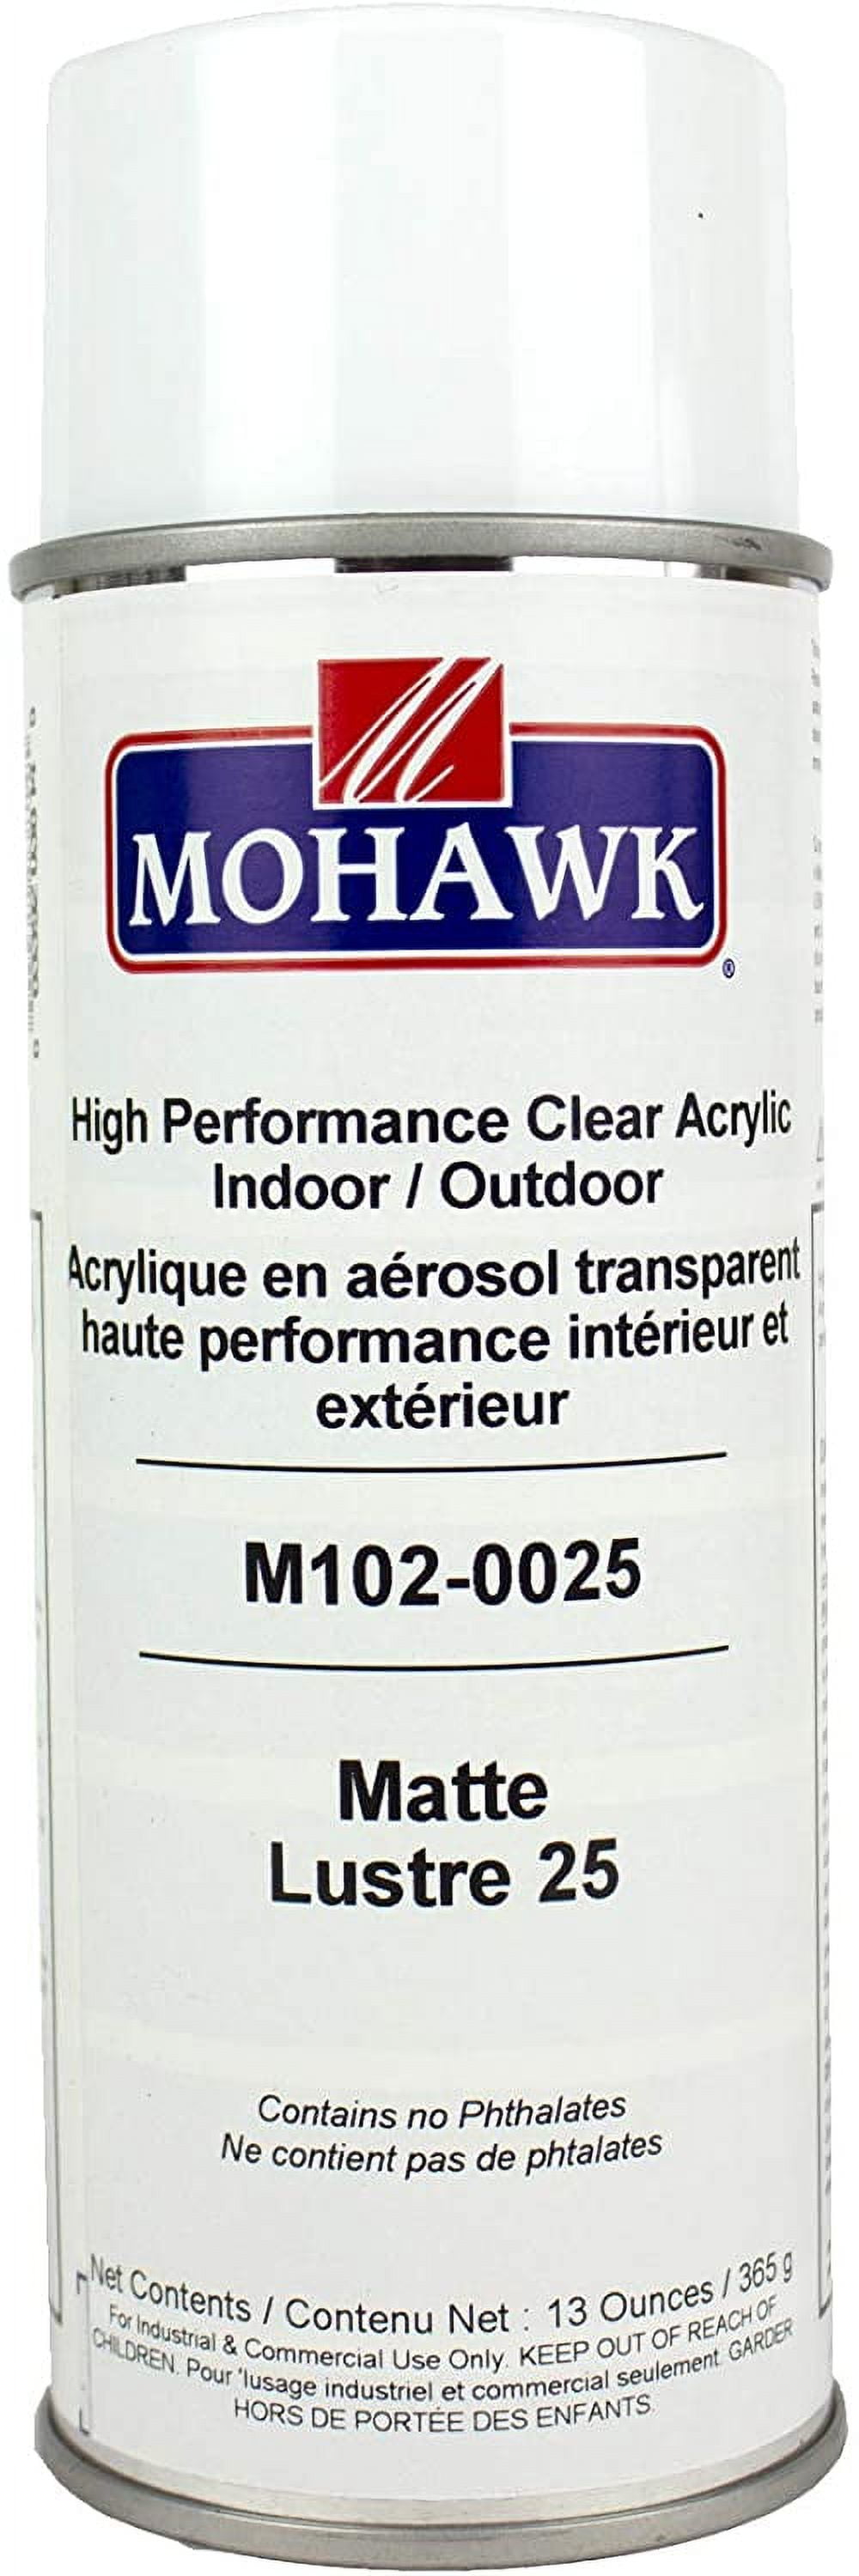 Mohawk M102-0025 High Performance Clear Acrylic Aerosol 13 oz